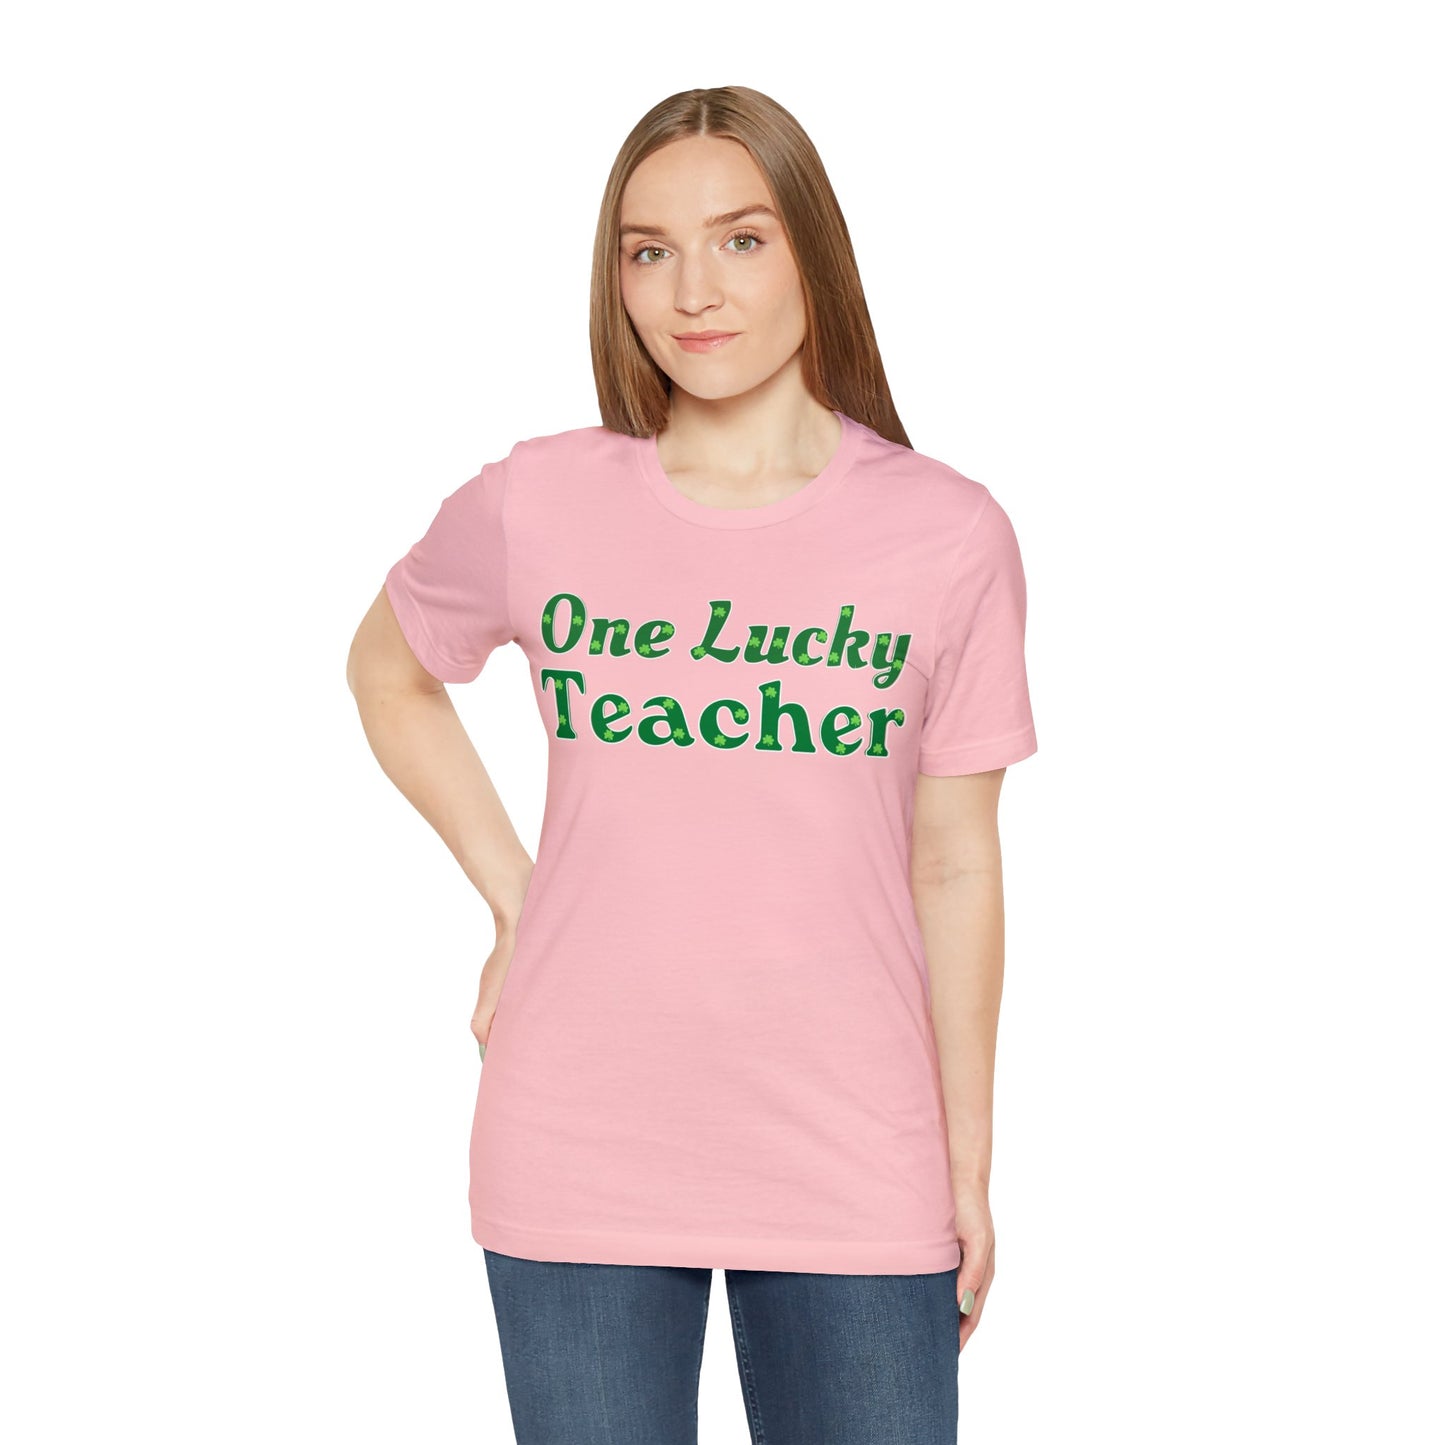 One Lucky Teacher Shirt feeling Lucky St Patrick's Day shirt